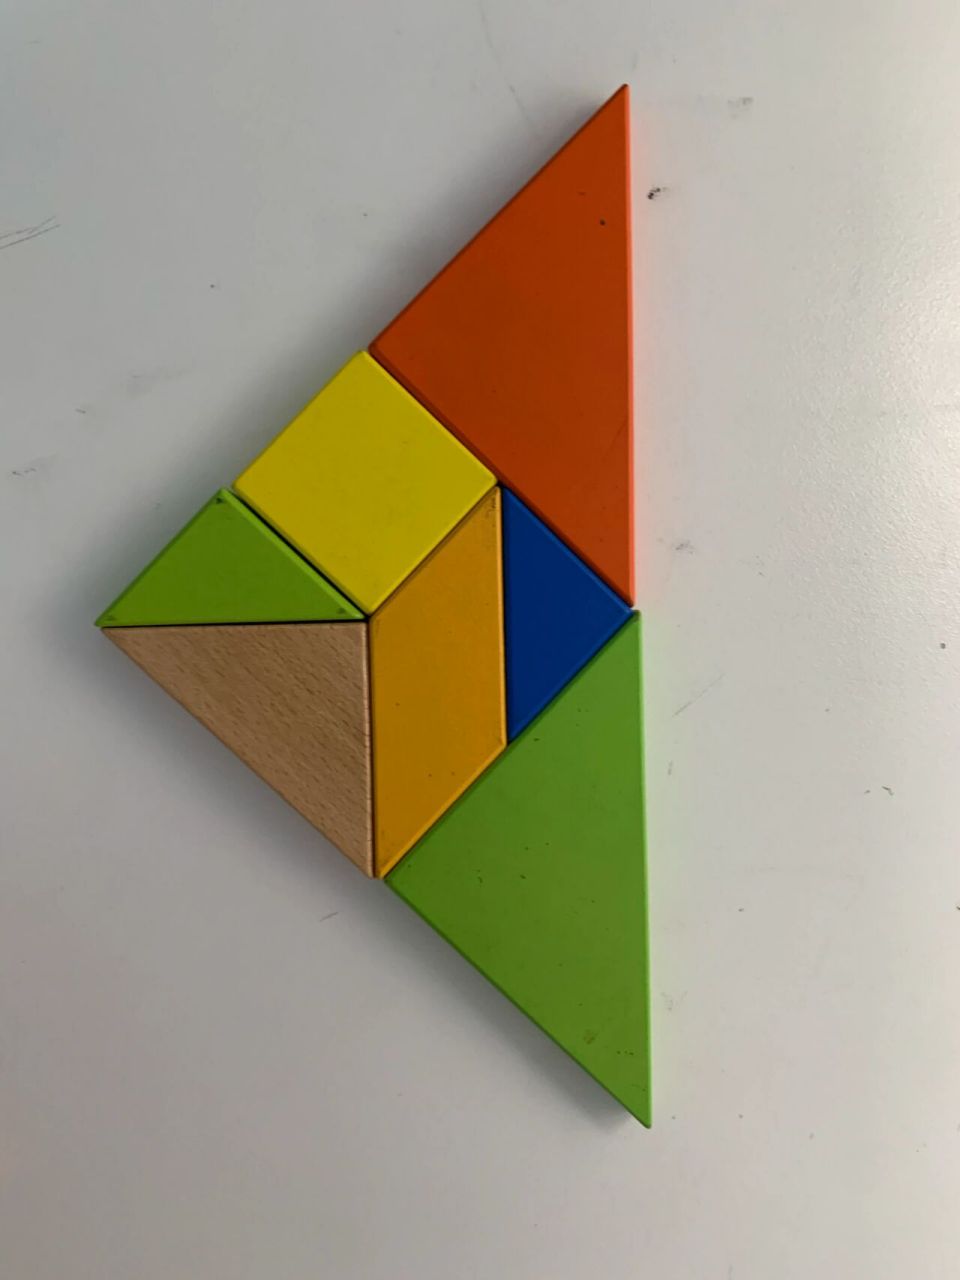 一年级数学下册七巧板之三角形拼摆 用4块拼三角形一共7种可能,图片上